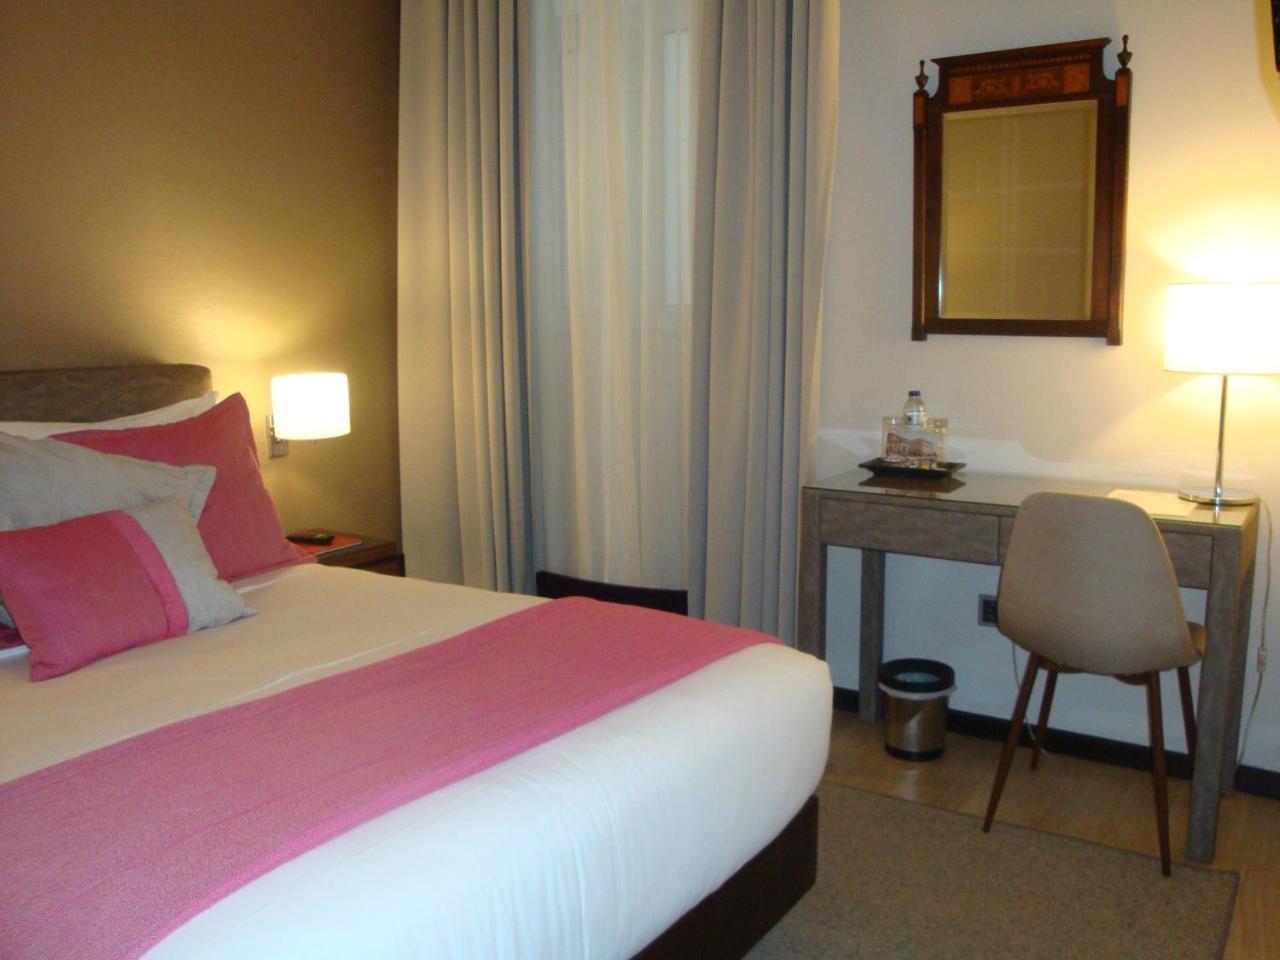 Hotel Aveiro Palace Zewnętrze zdjęcie